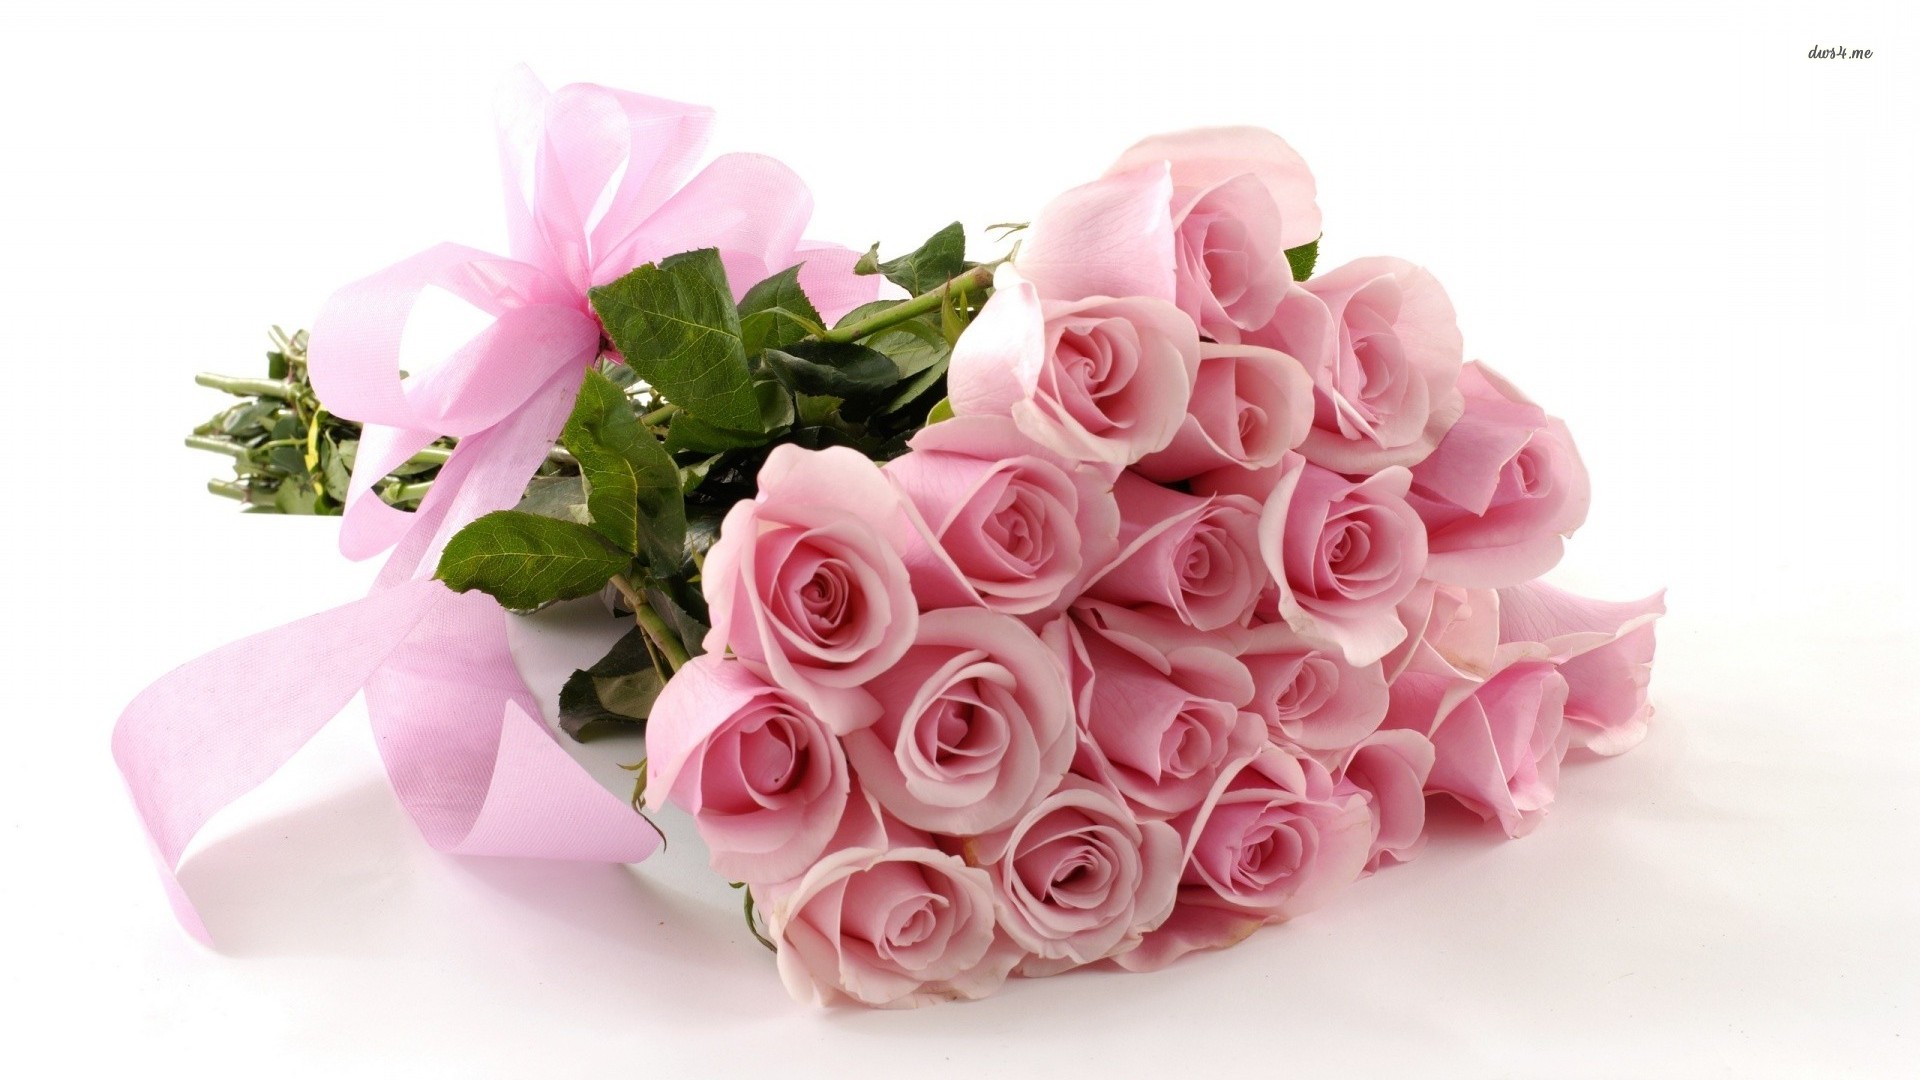 11636-bouquet-of-pink-roses-1920x1080-flower-wallpaper.jpg